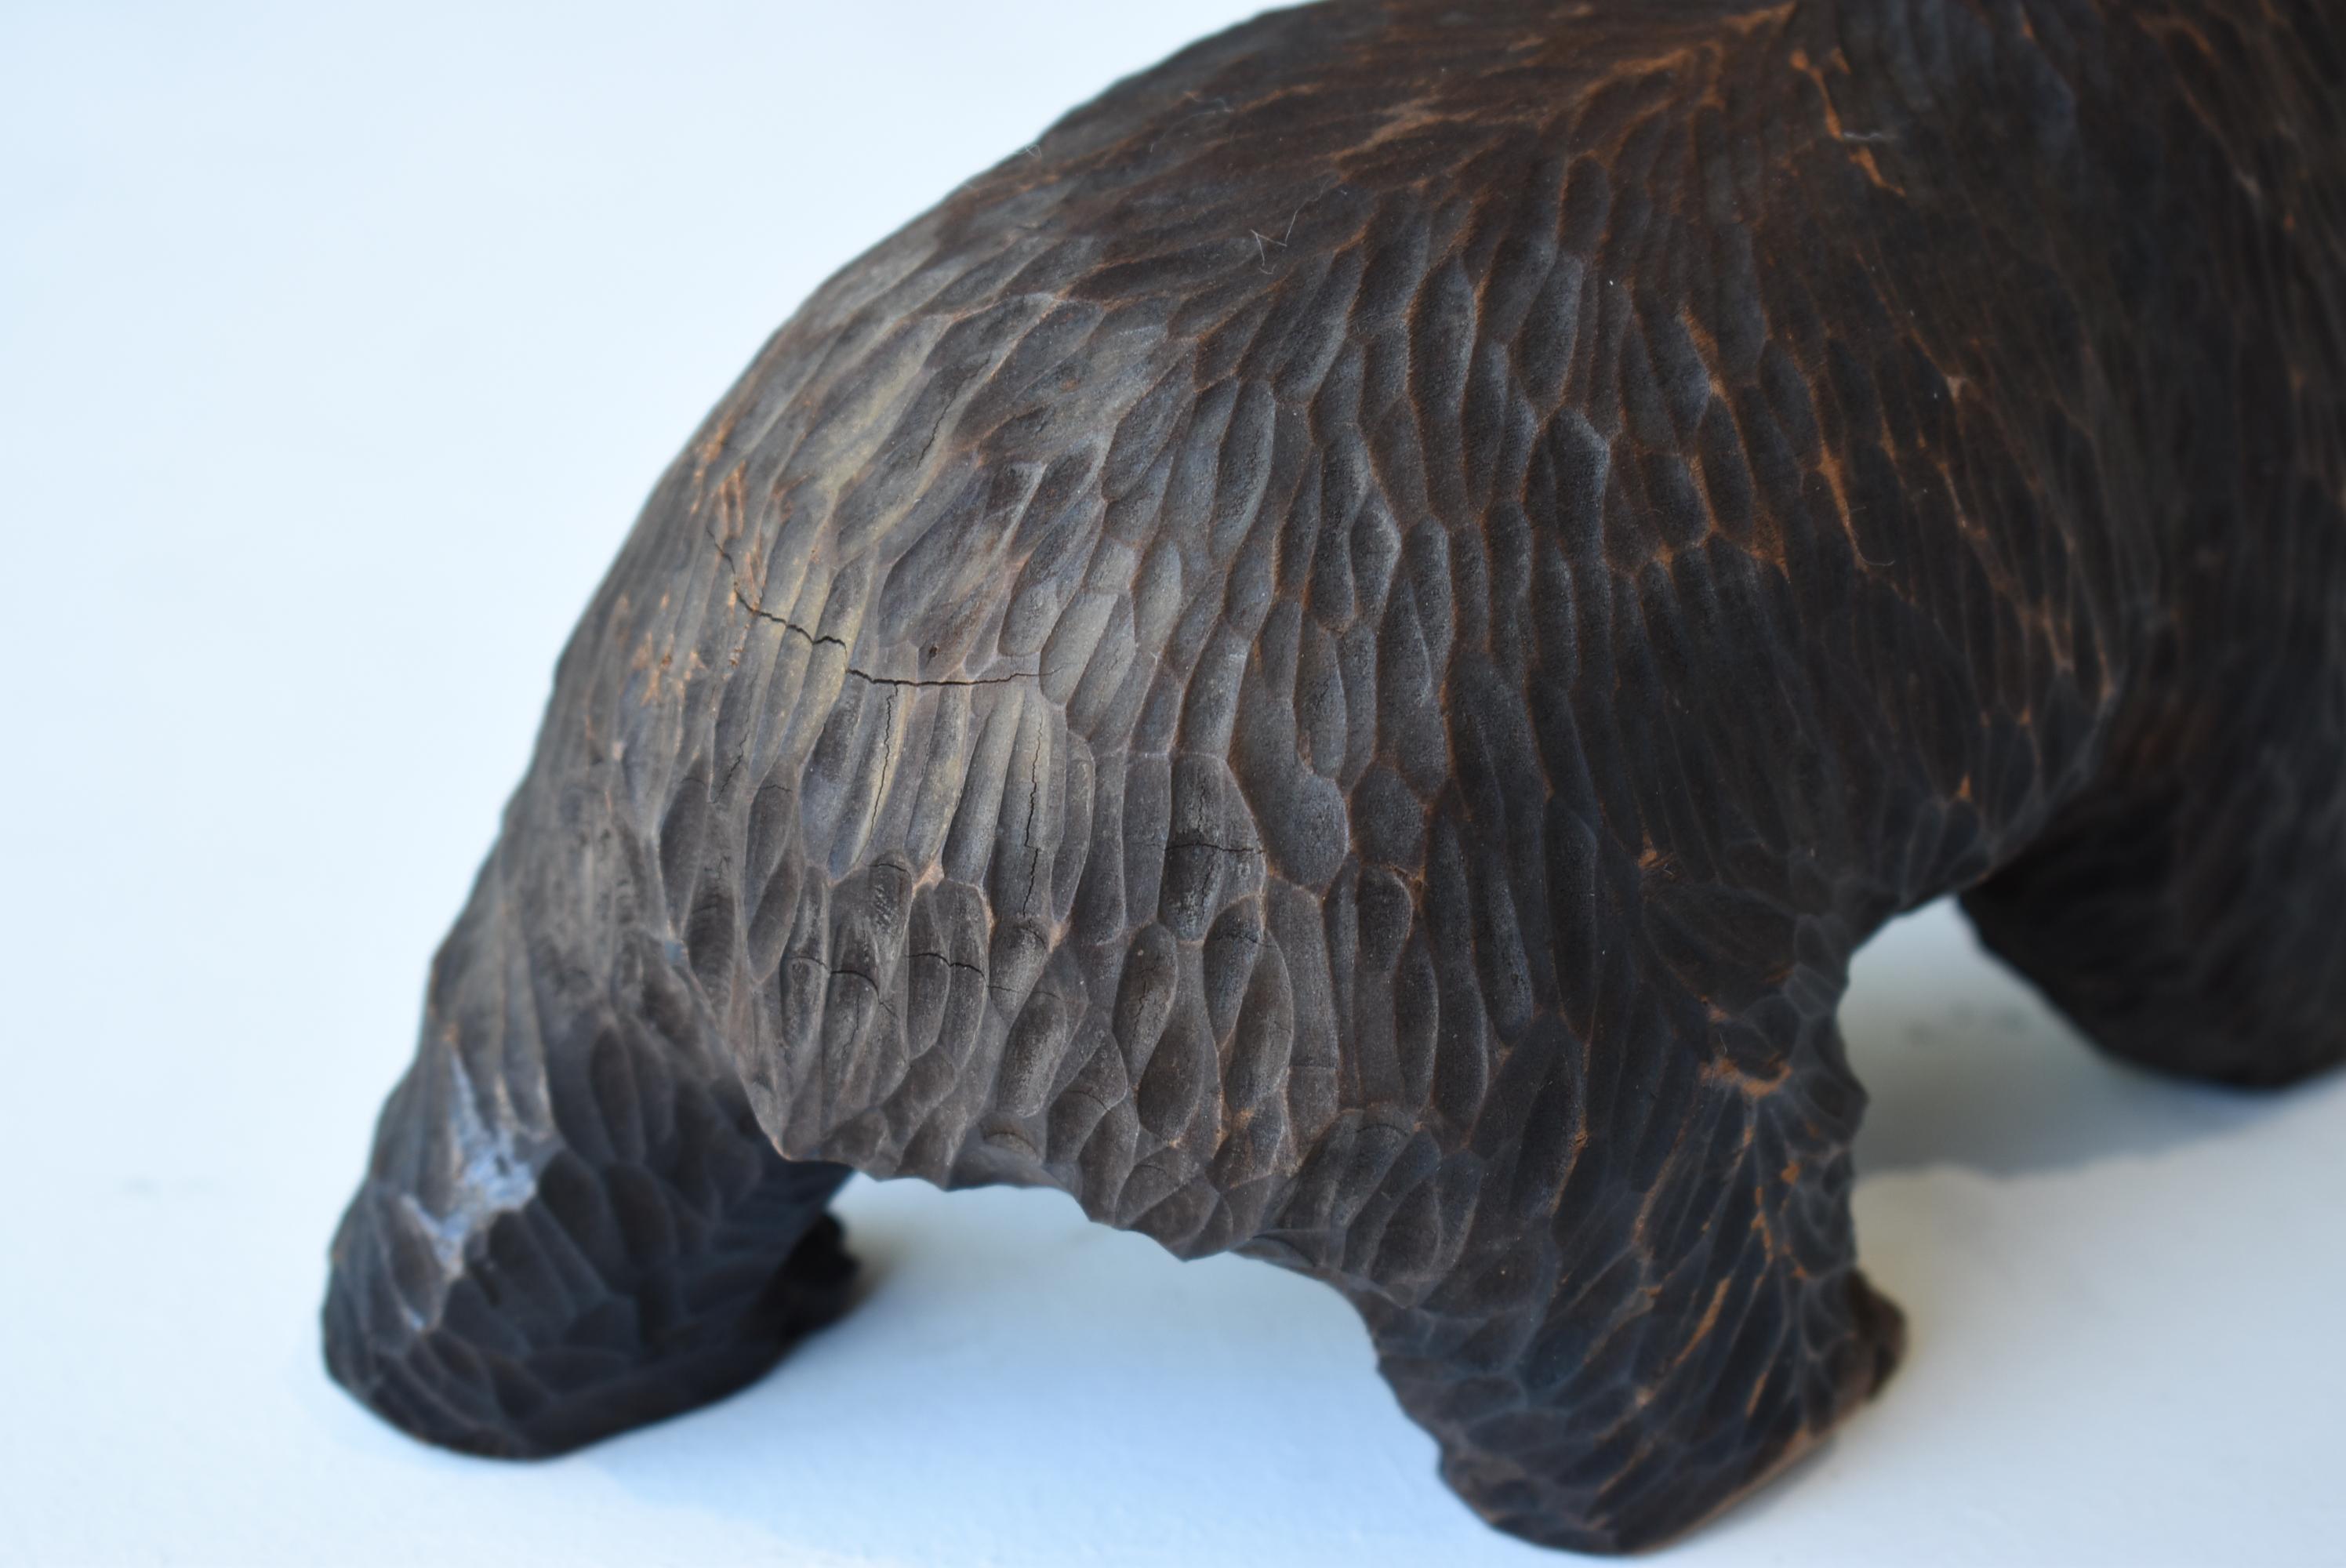 Japanese Old Wood Carving Bear 1930s-1950s/Vintage Figurine Sculpture Folk Art For Sale 3